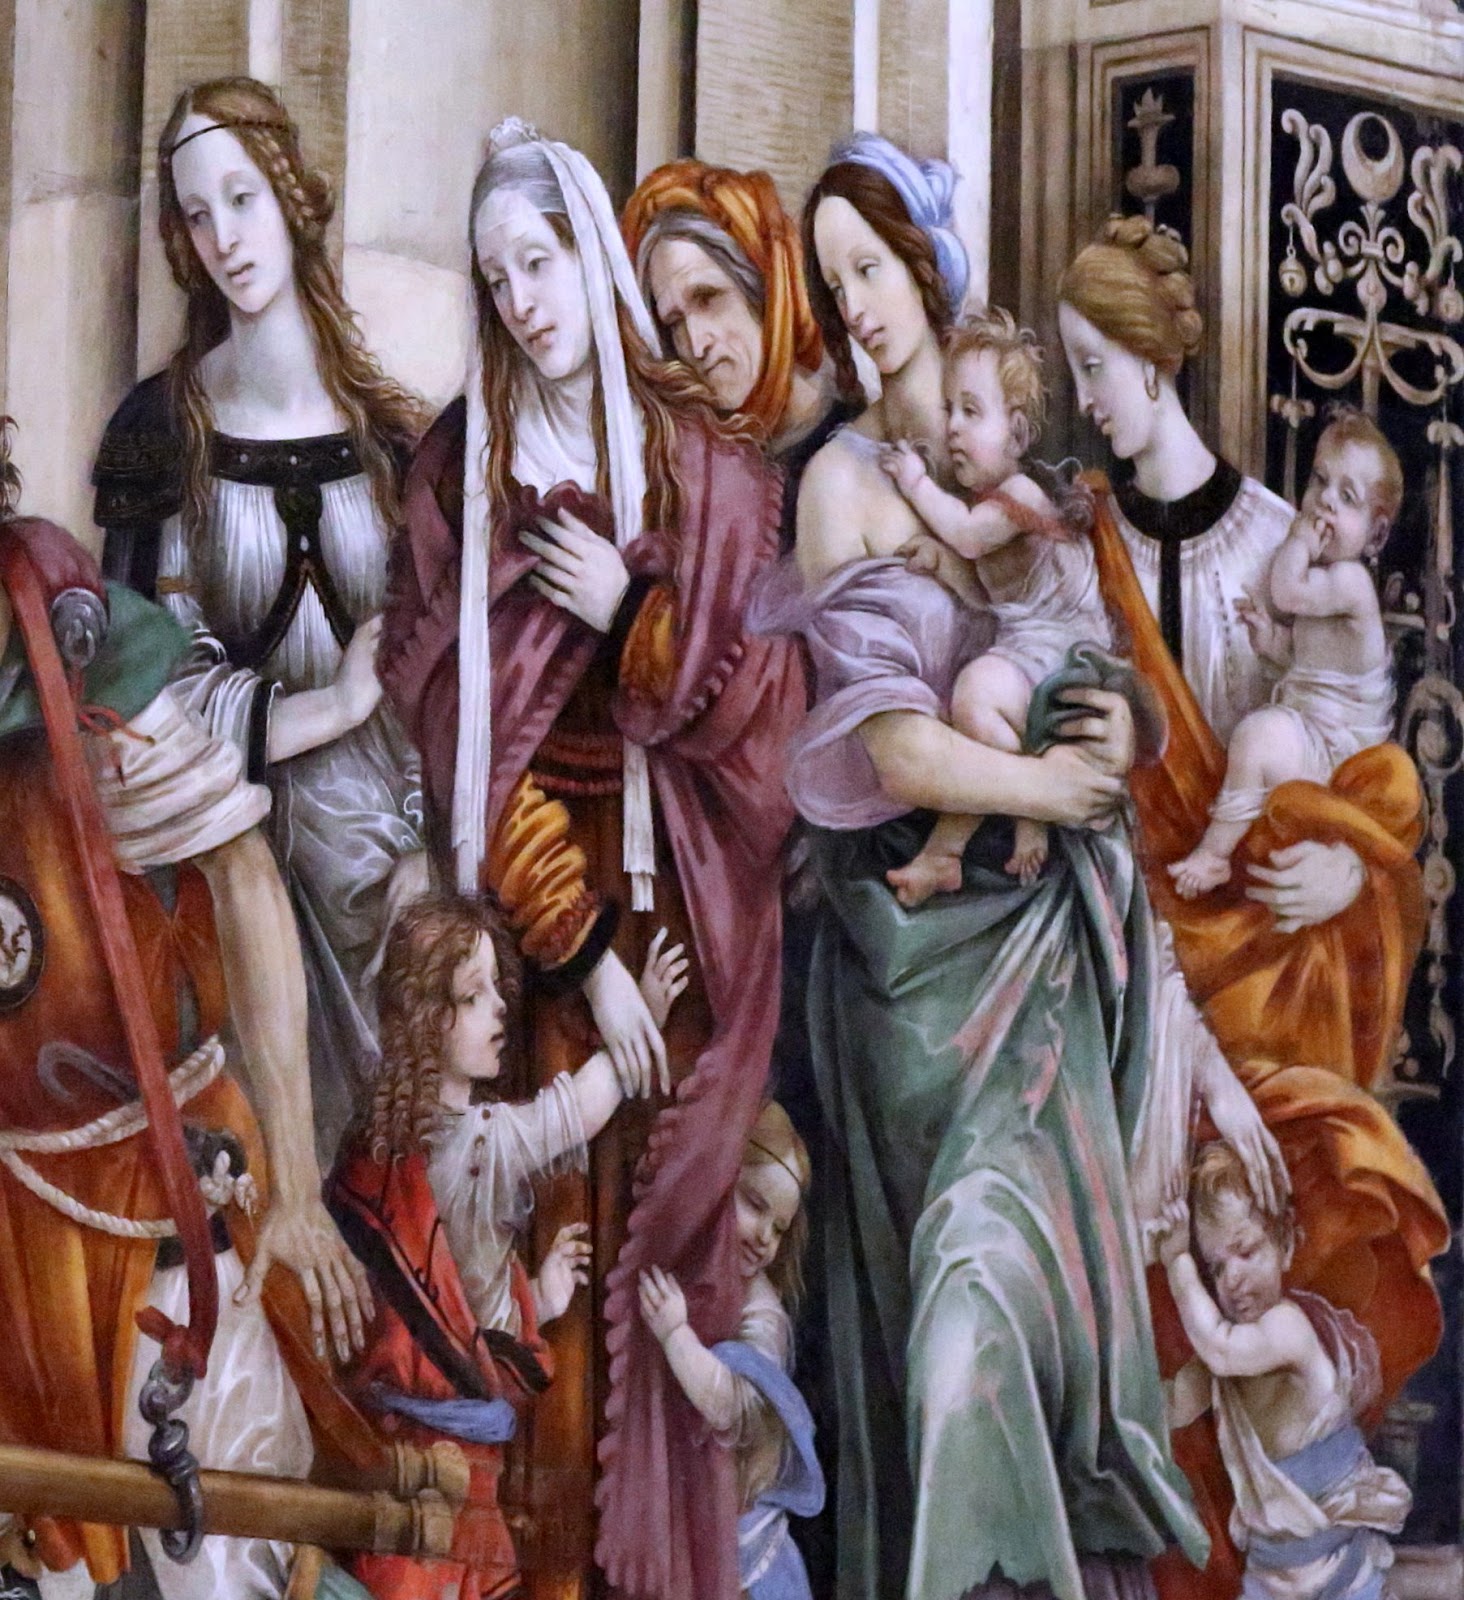 Filippino+Lippi-1457-1504 (38).jpg